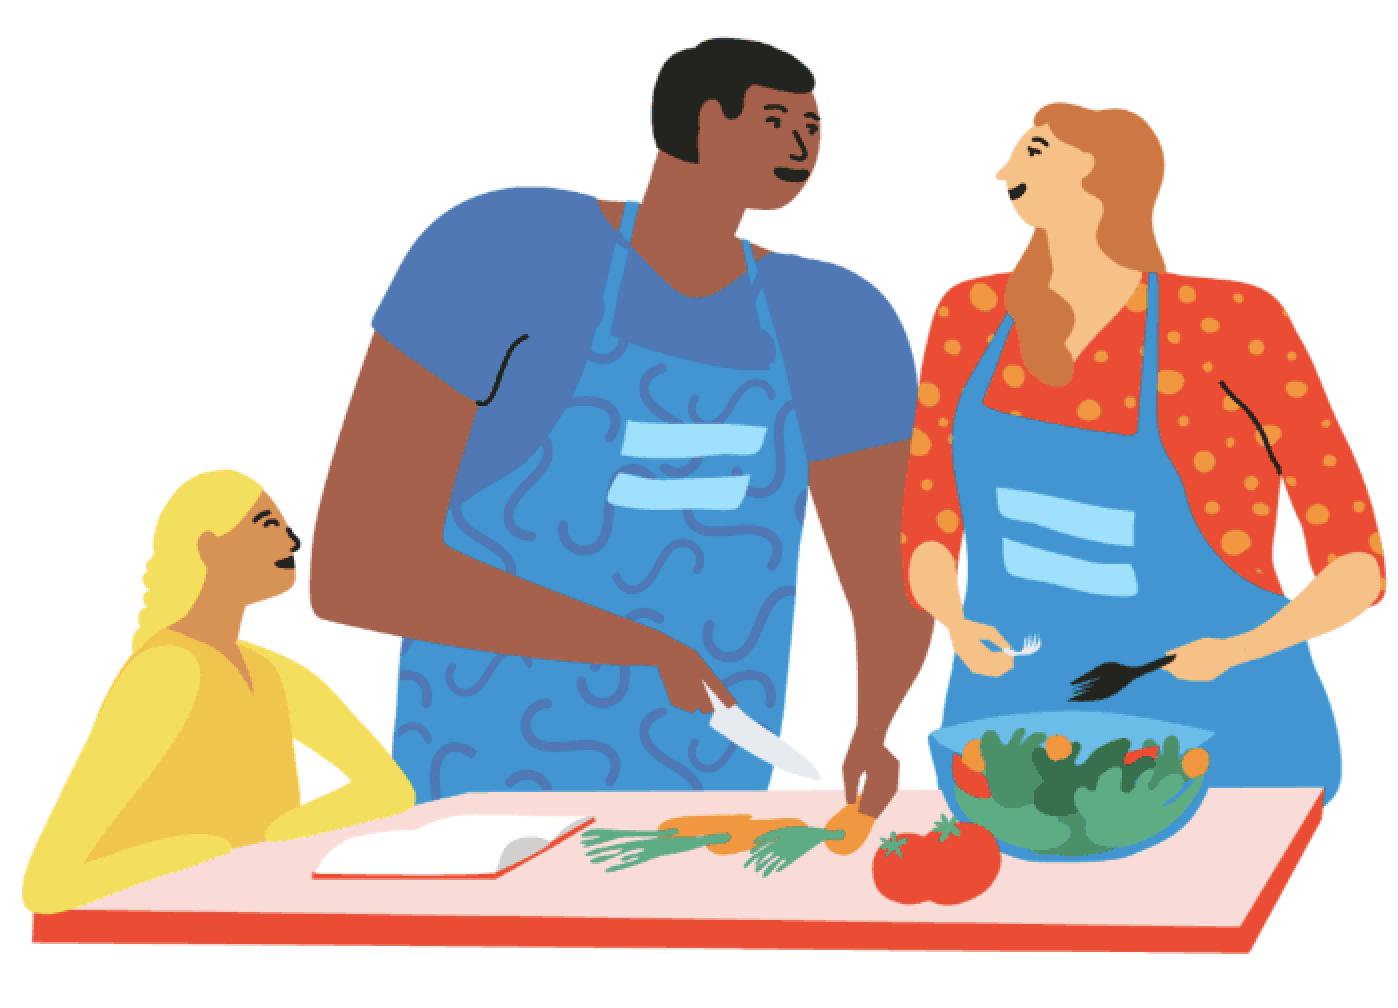 Mujer y hombre compartiendo los cuidados y tareas de la casa, en la imagen cocinan juntos, acompañados de una niña